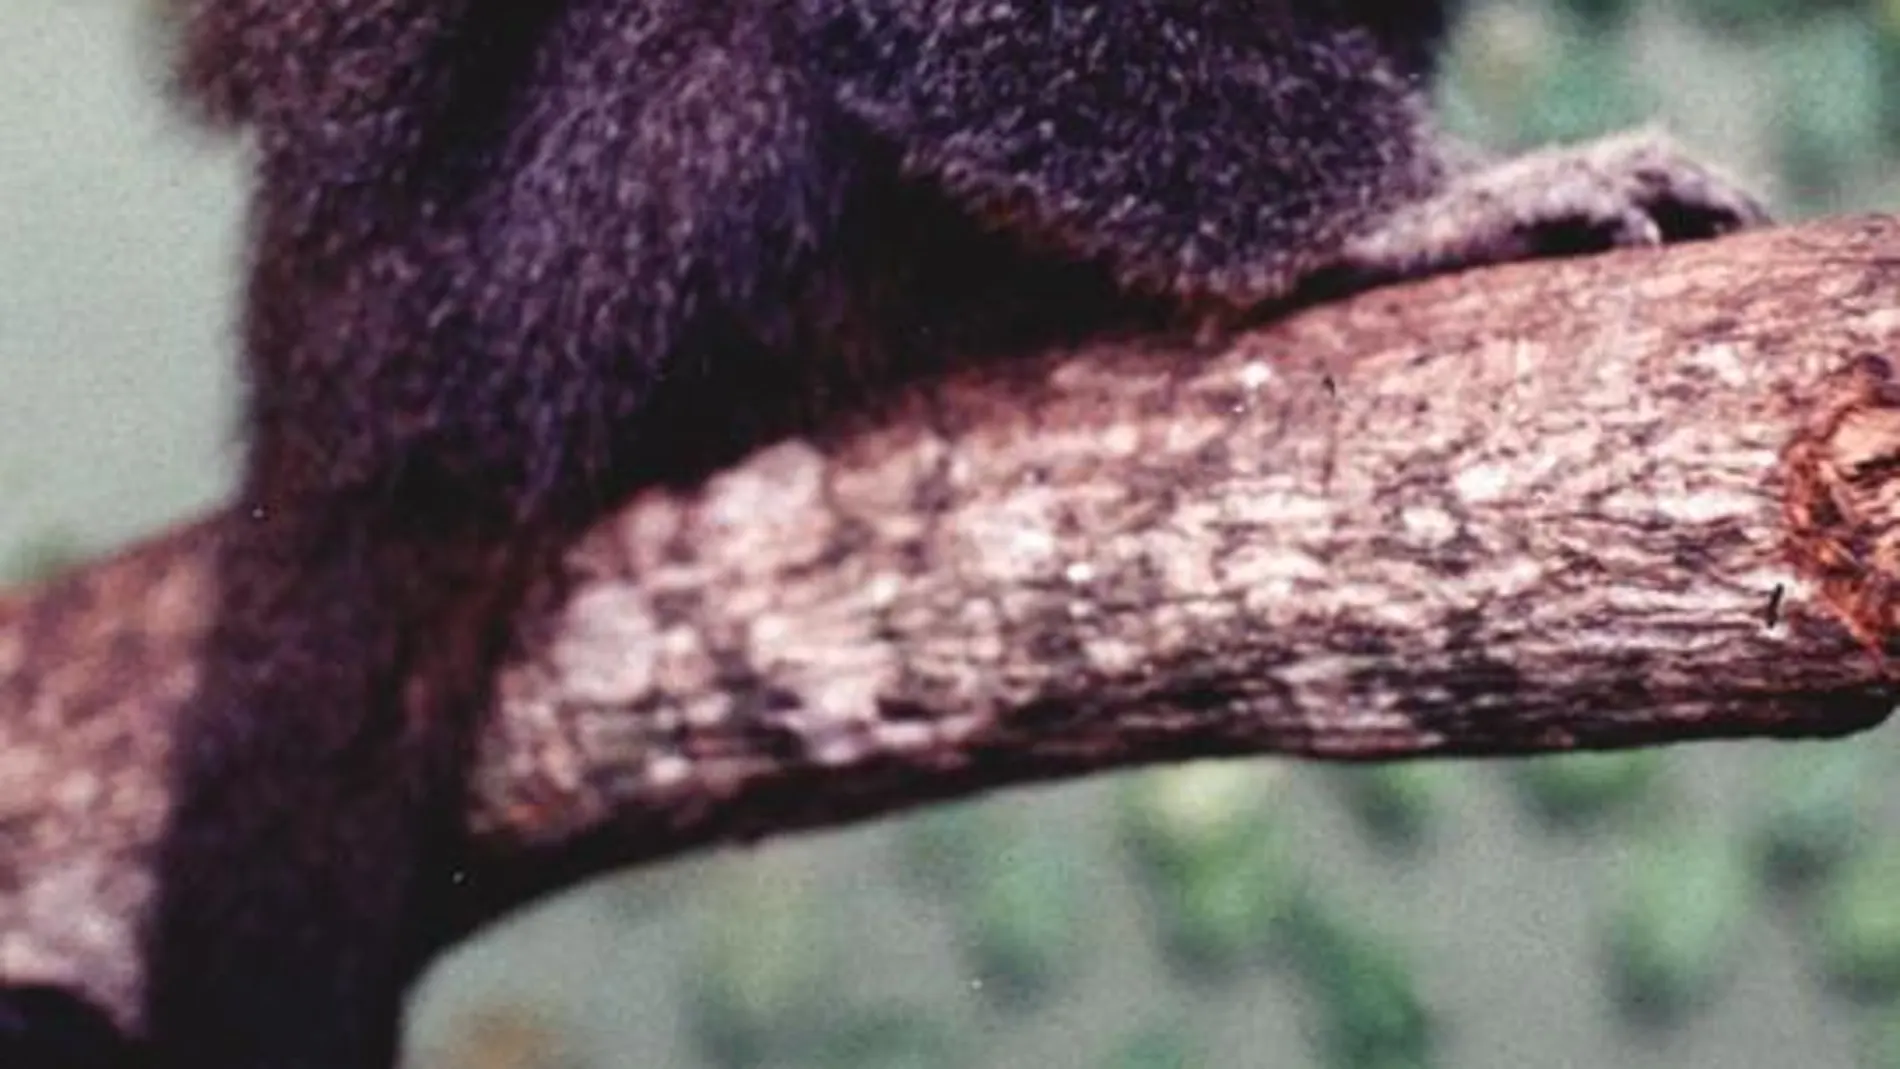 En 2002 ya se descubrió en la Amazonía otra especie de callicebus de gran belleza